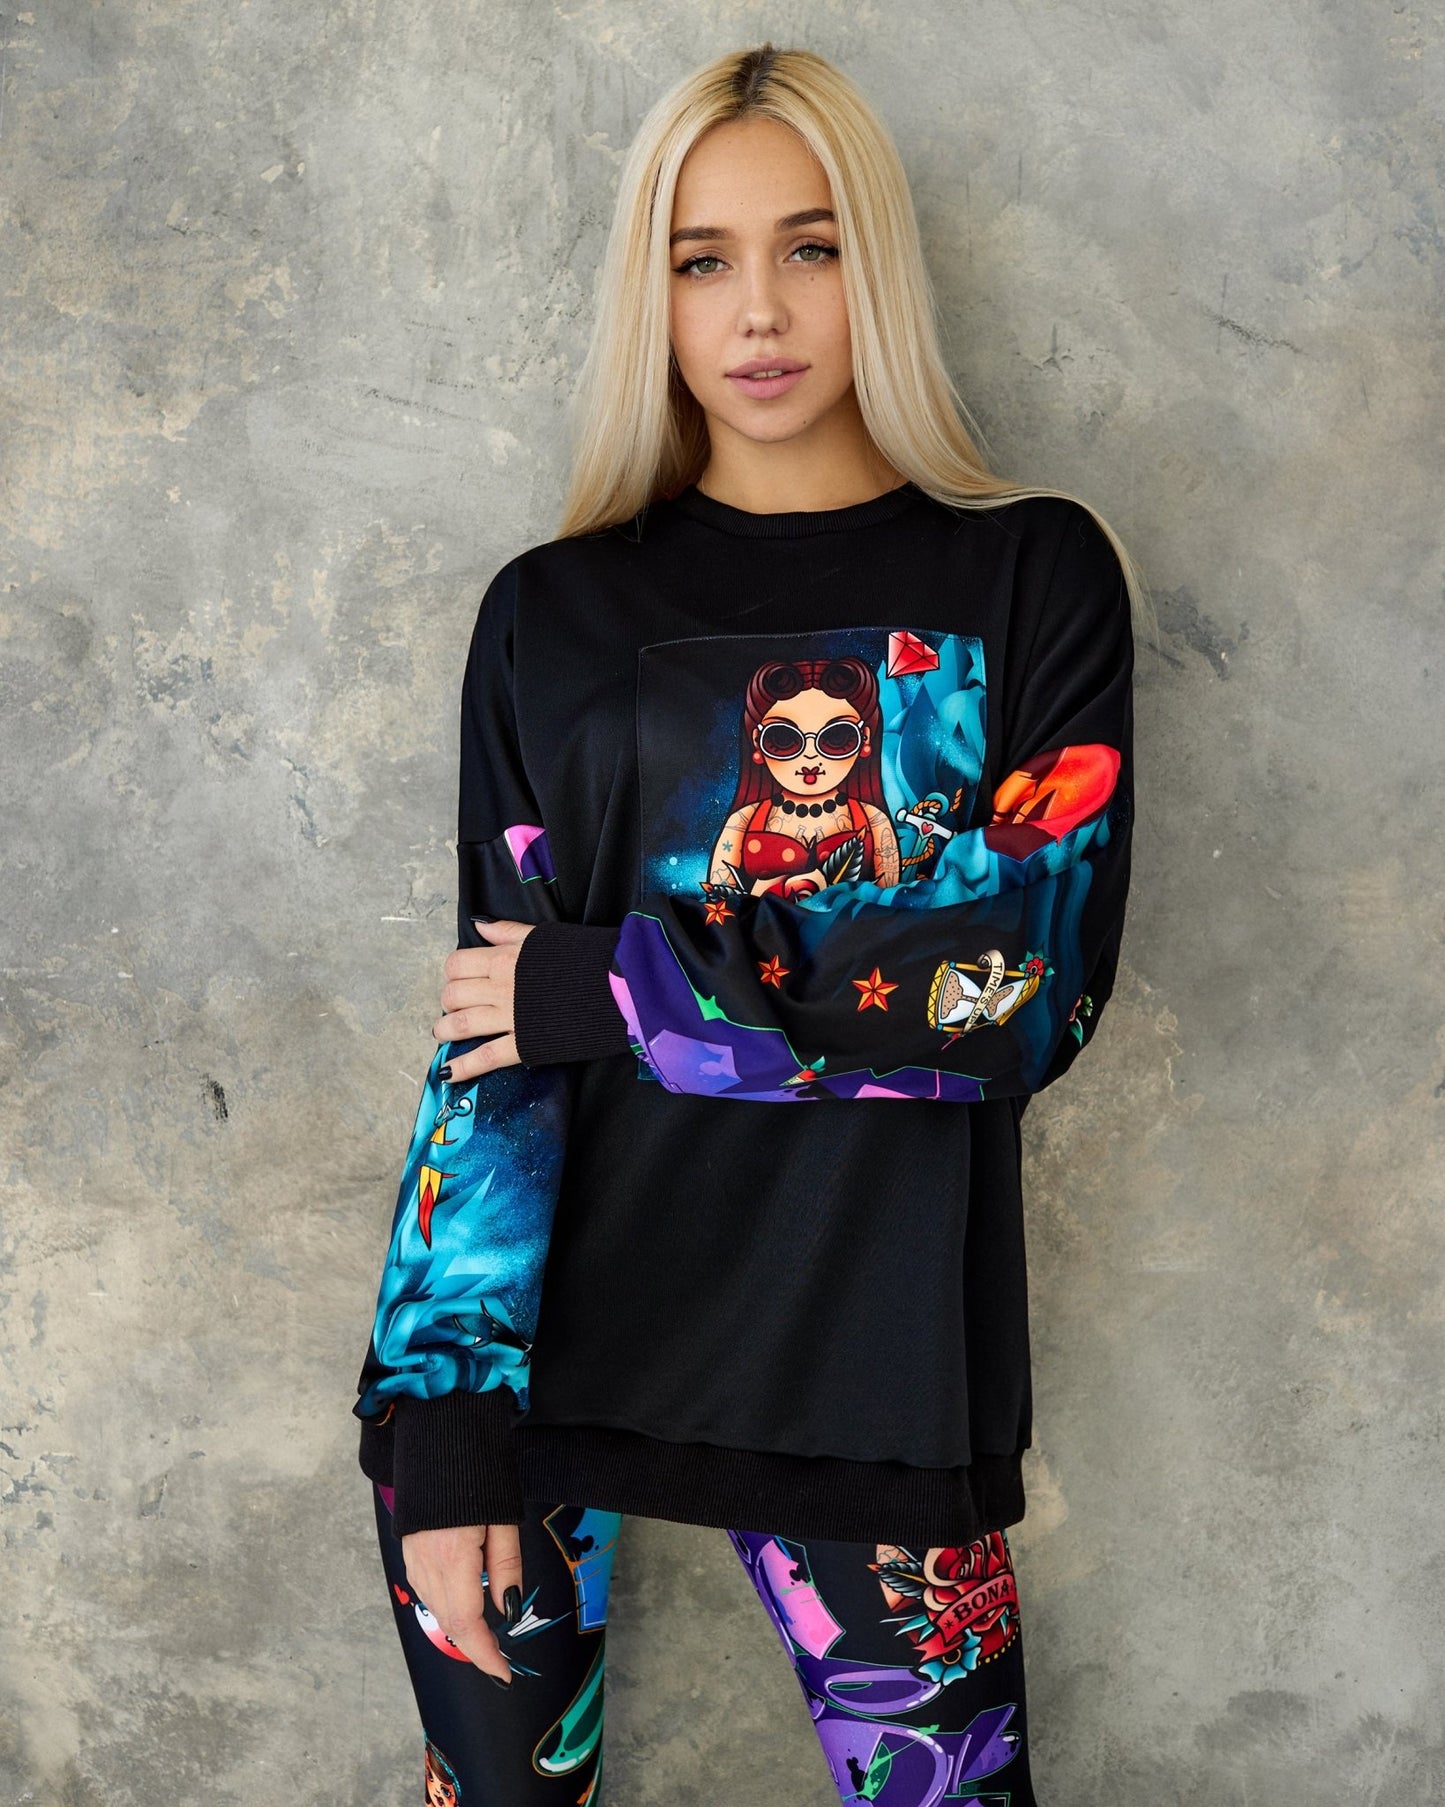 Sweatshirt PIC-shirt Pin-Up Girl - Bona Fide